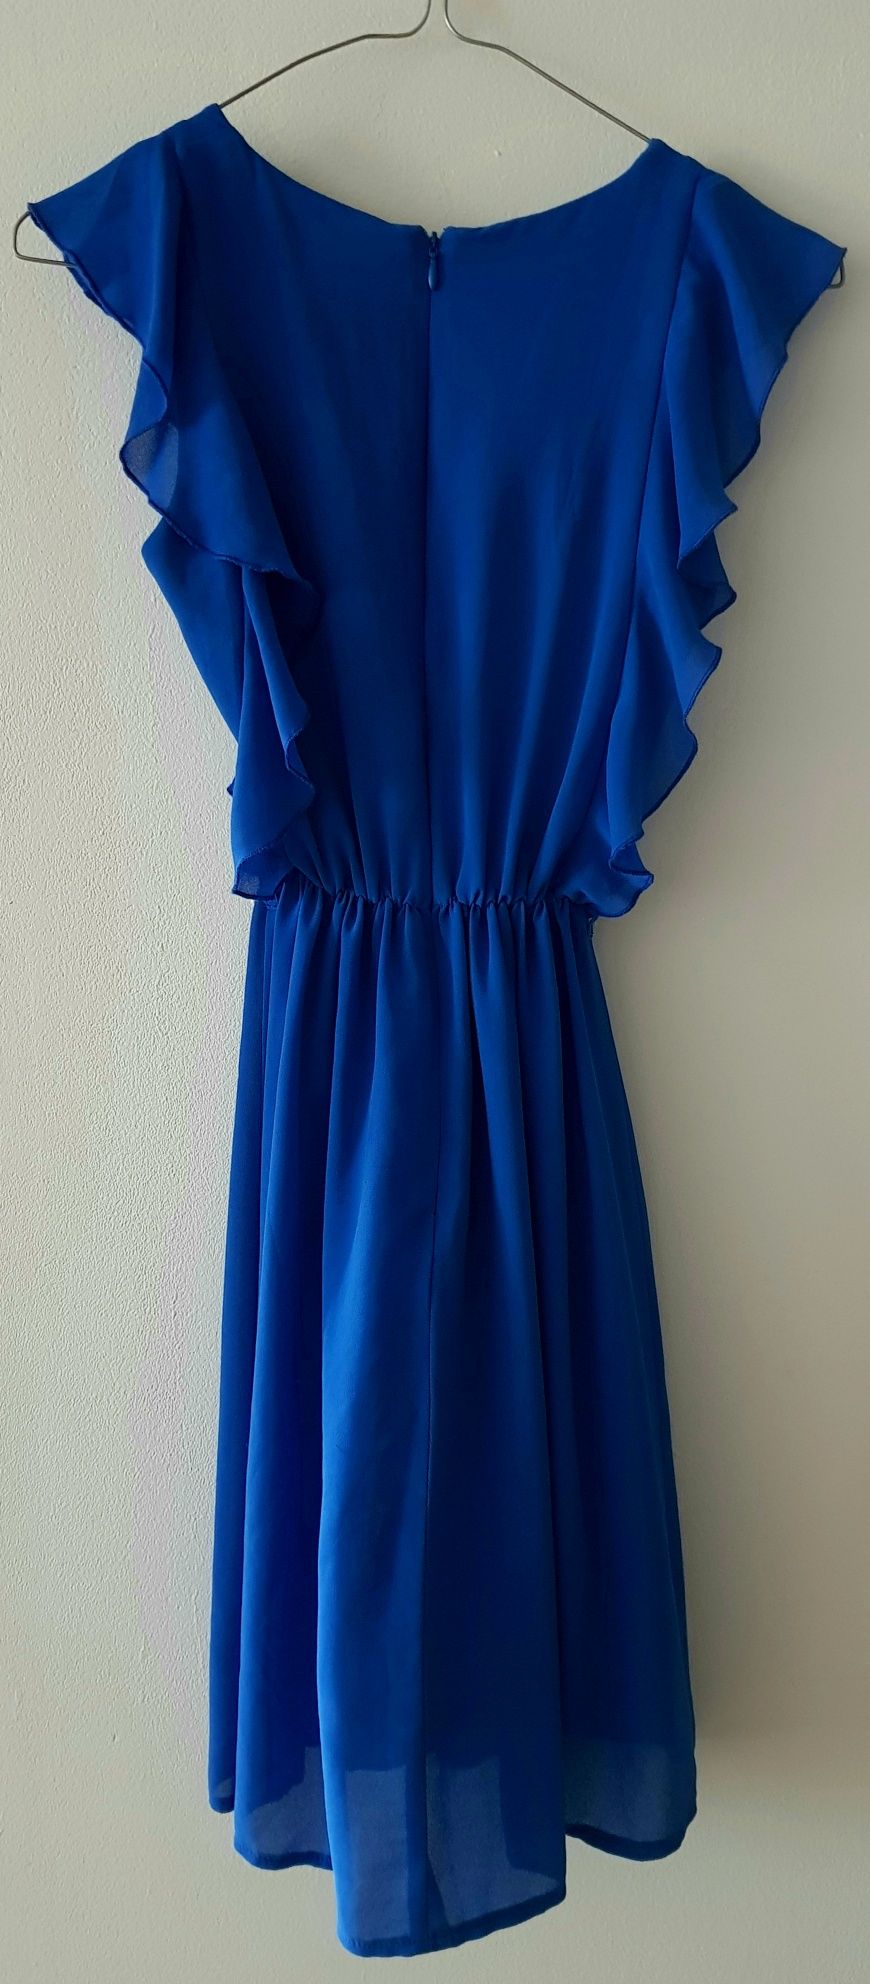 Rochie eleganta albastra cu volanase